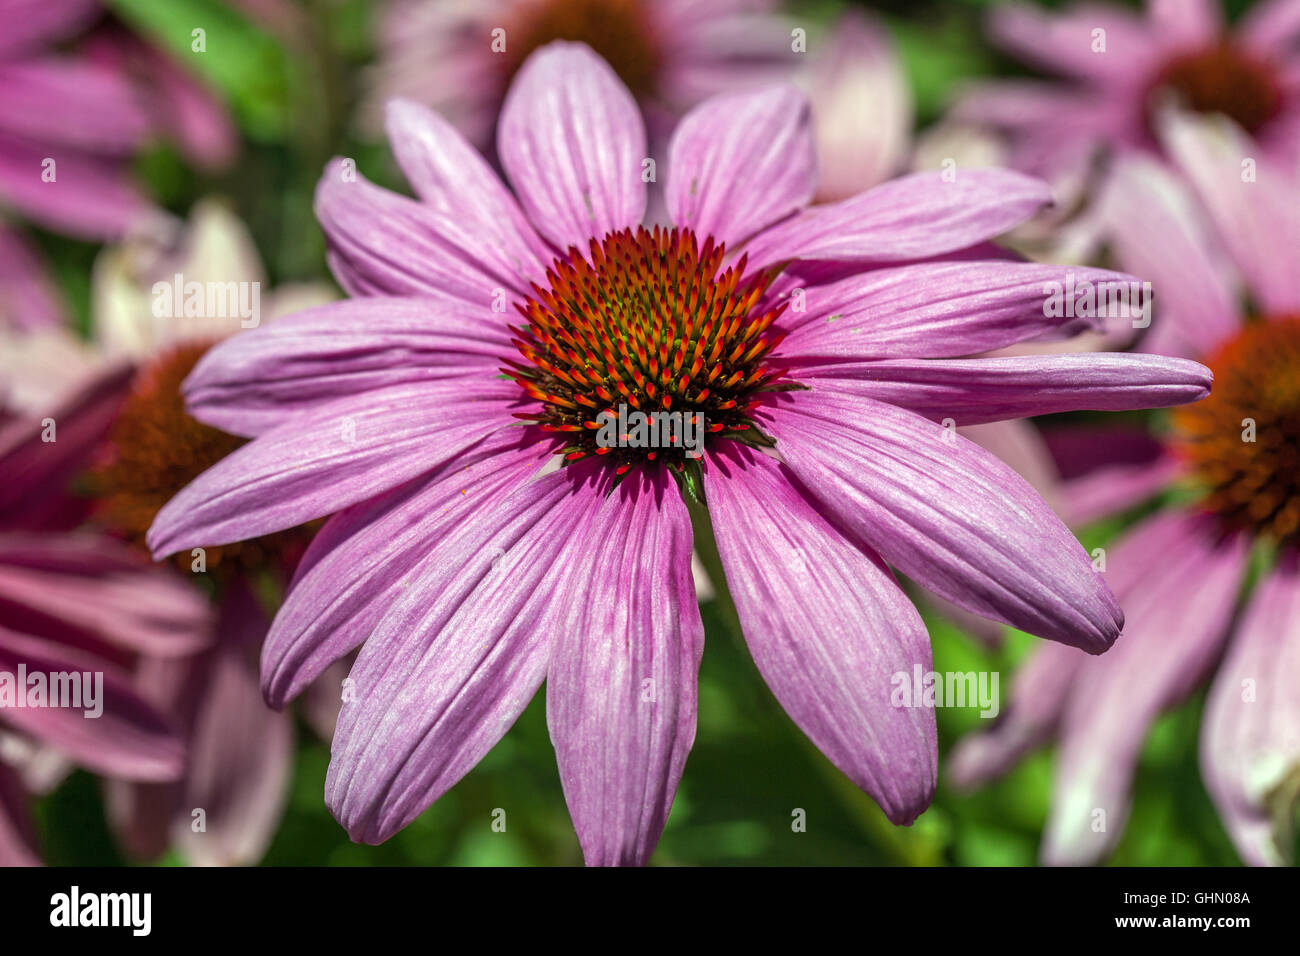 Echinacea Magnus flower Stock Photo